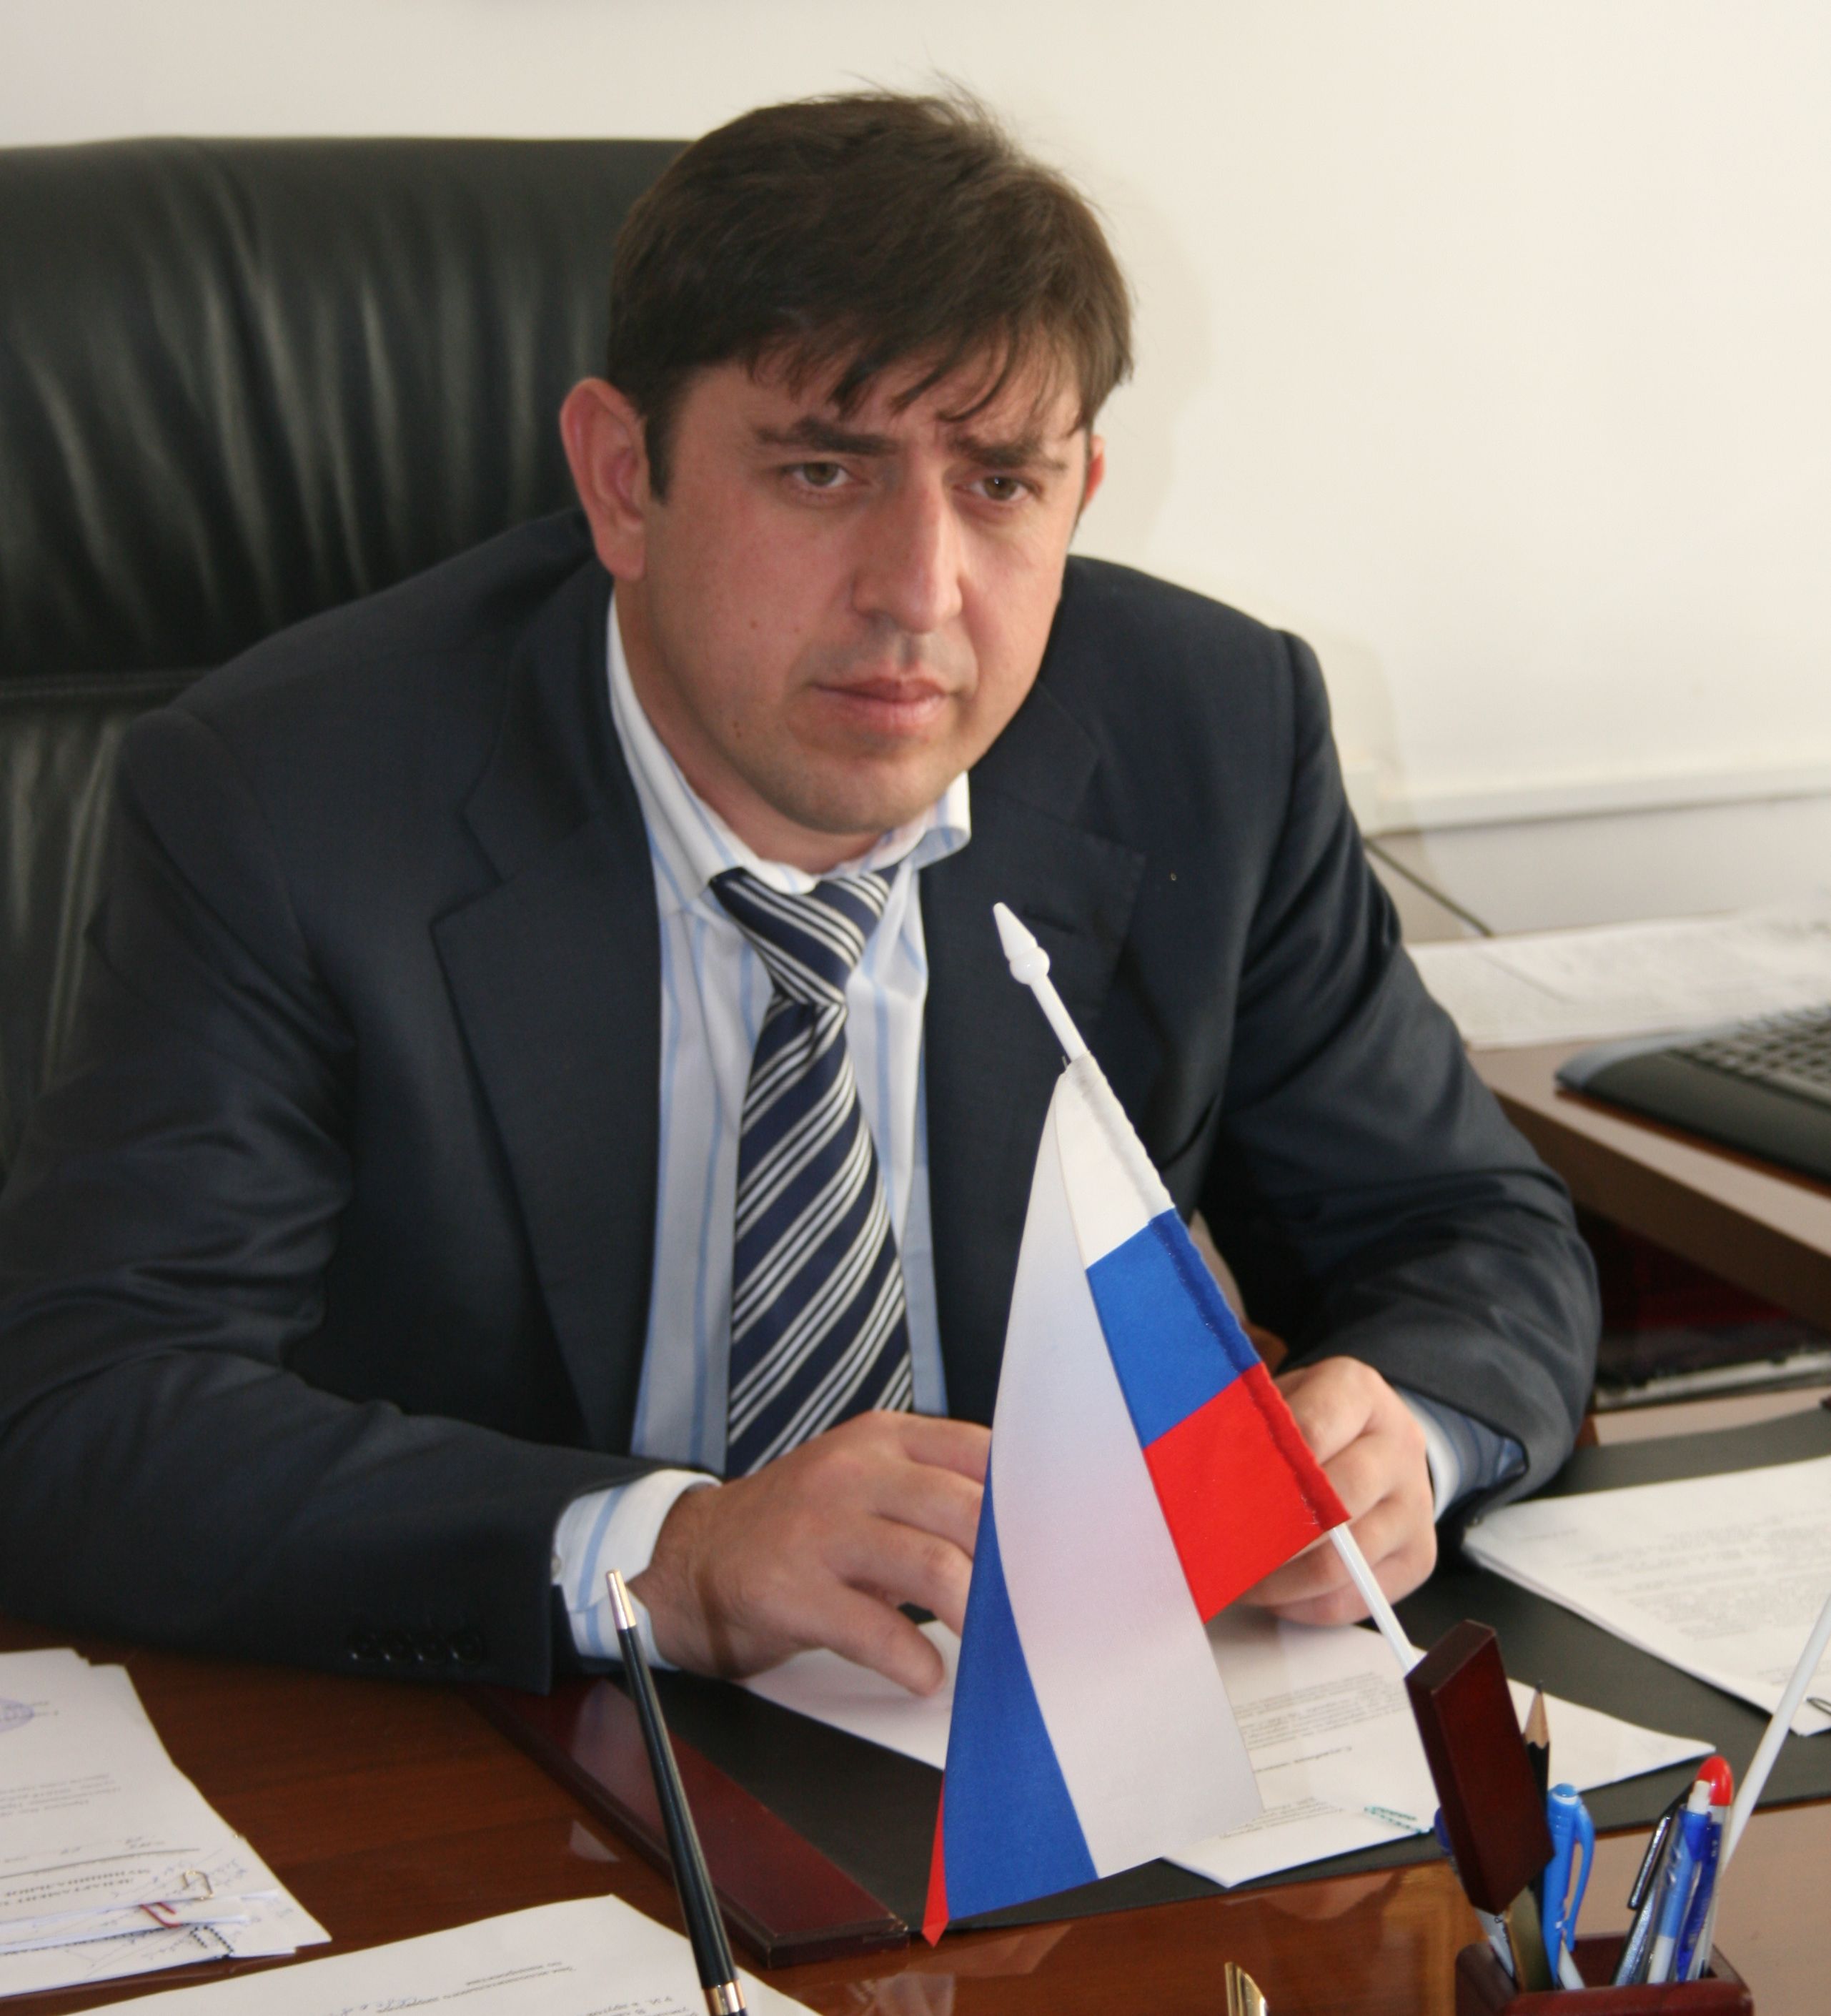 Обращение Исполнительного директора Территориального фонда ОМС Чеченской Республики по случаю Международного дня инвалидов